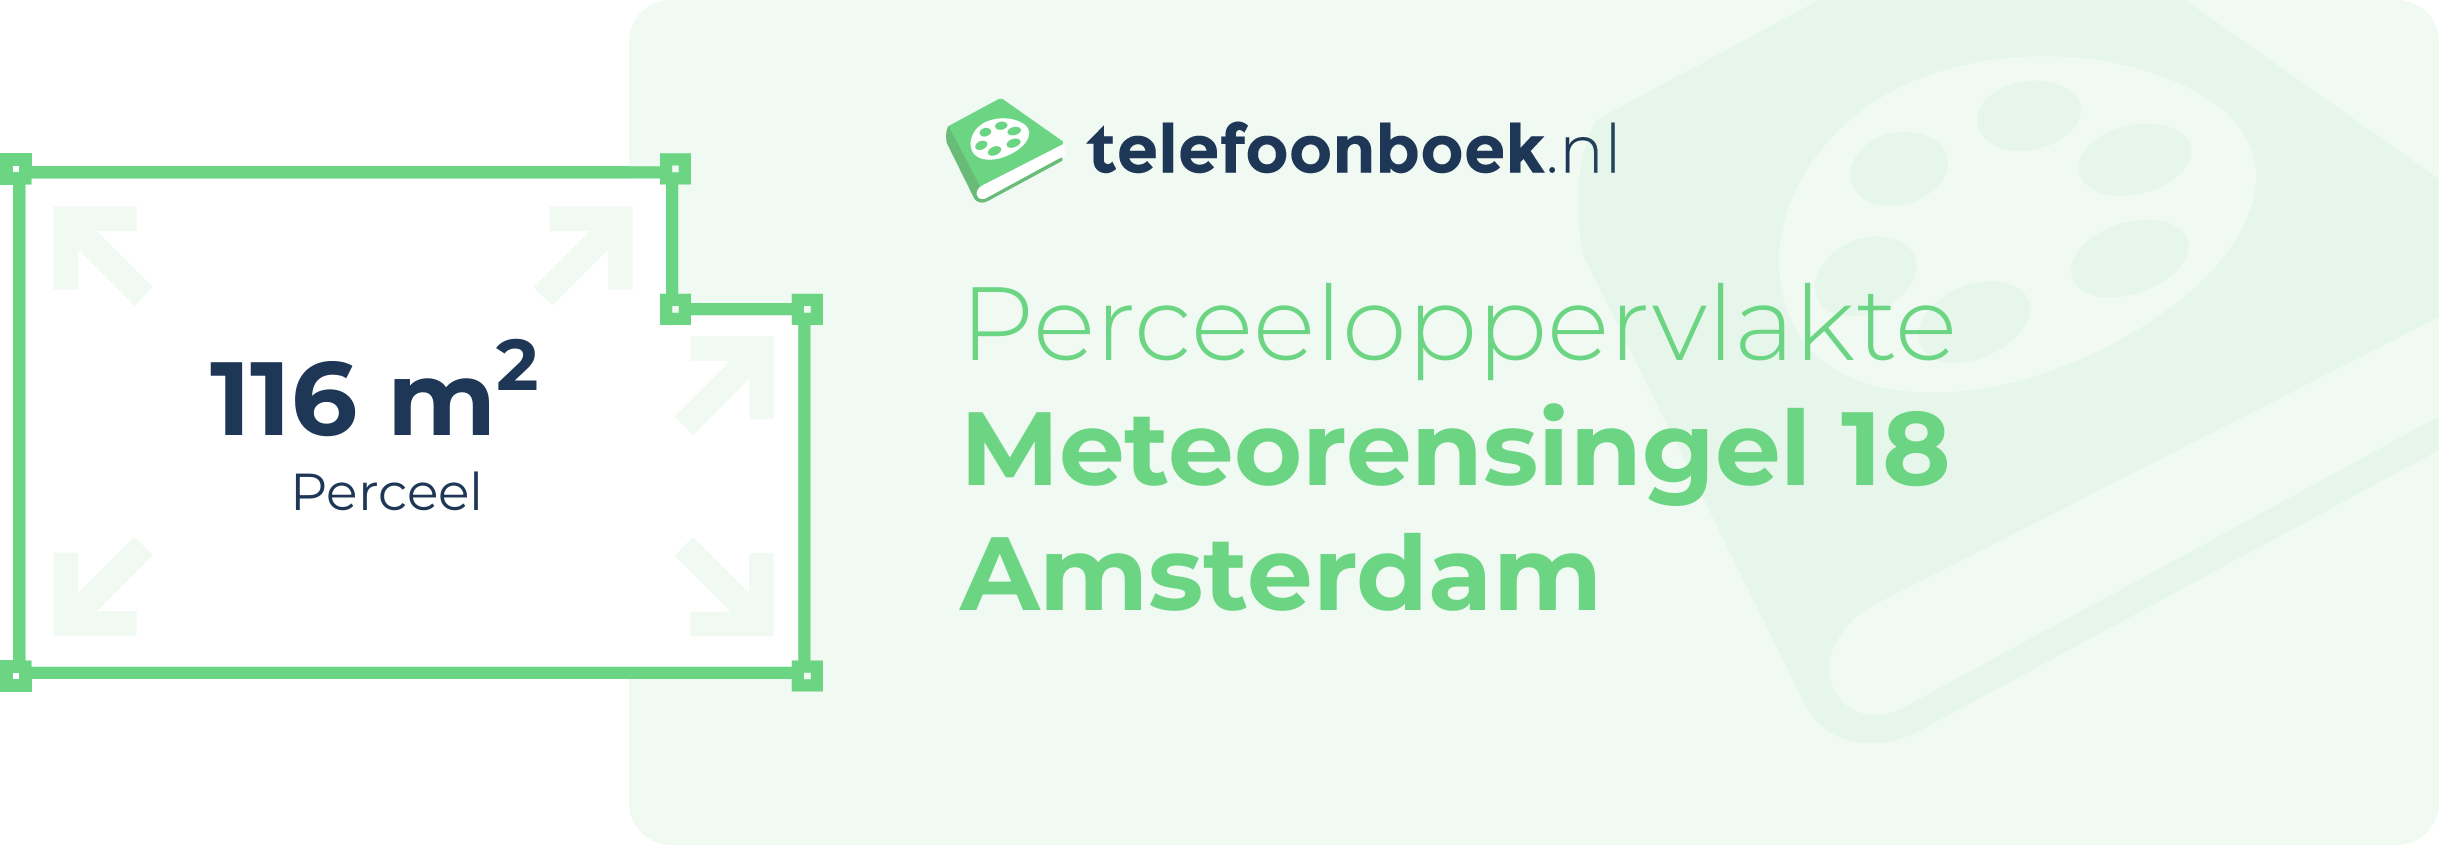 Perceeloppervlakte Meteorensingel 18 Amsterdam